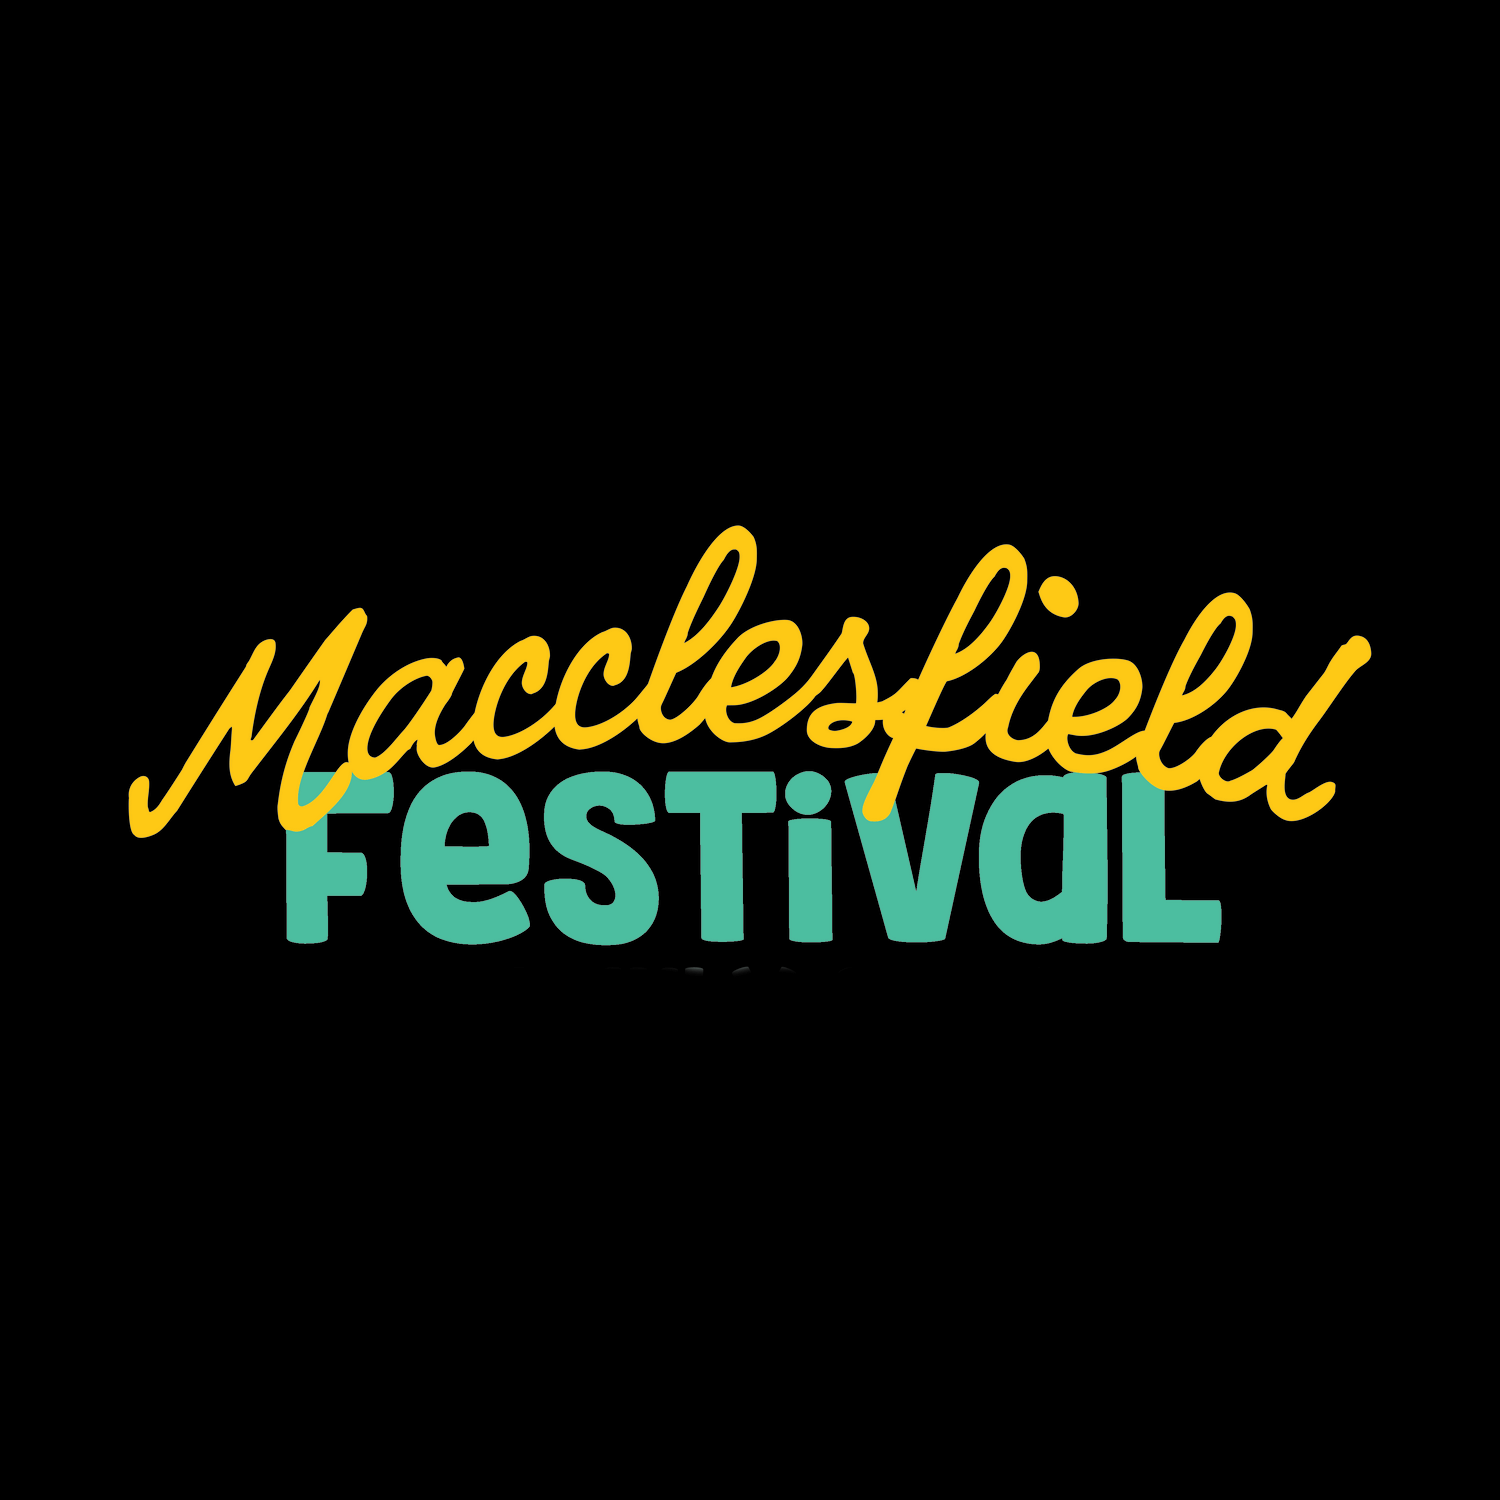 Macclesfield Festival Store